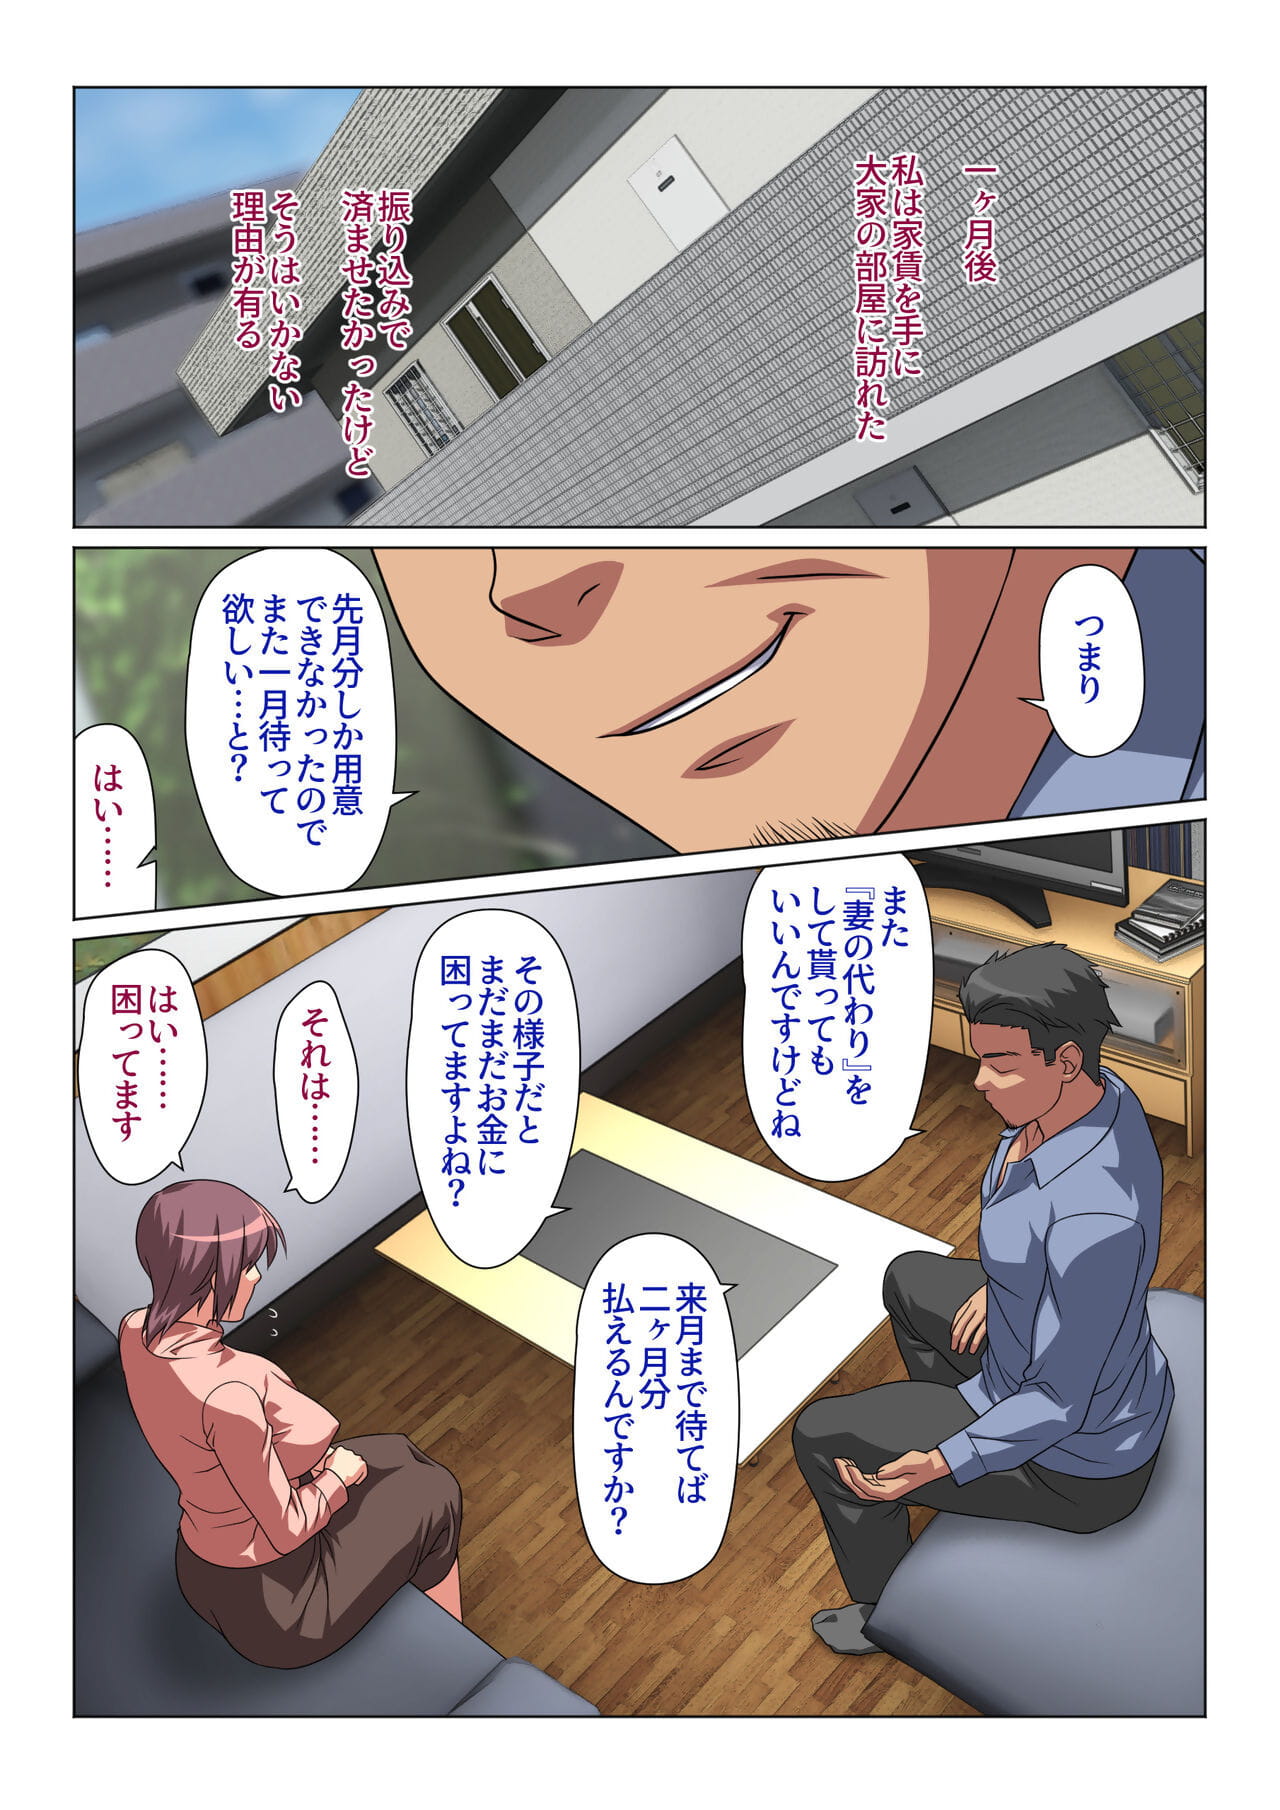 tokidoki watashi kono hito geen moderne san ni natte imasu page 1